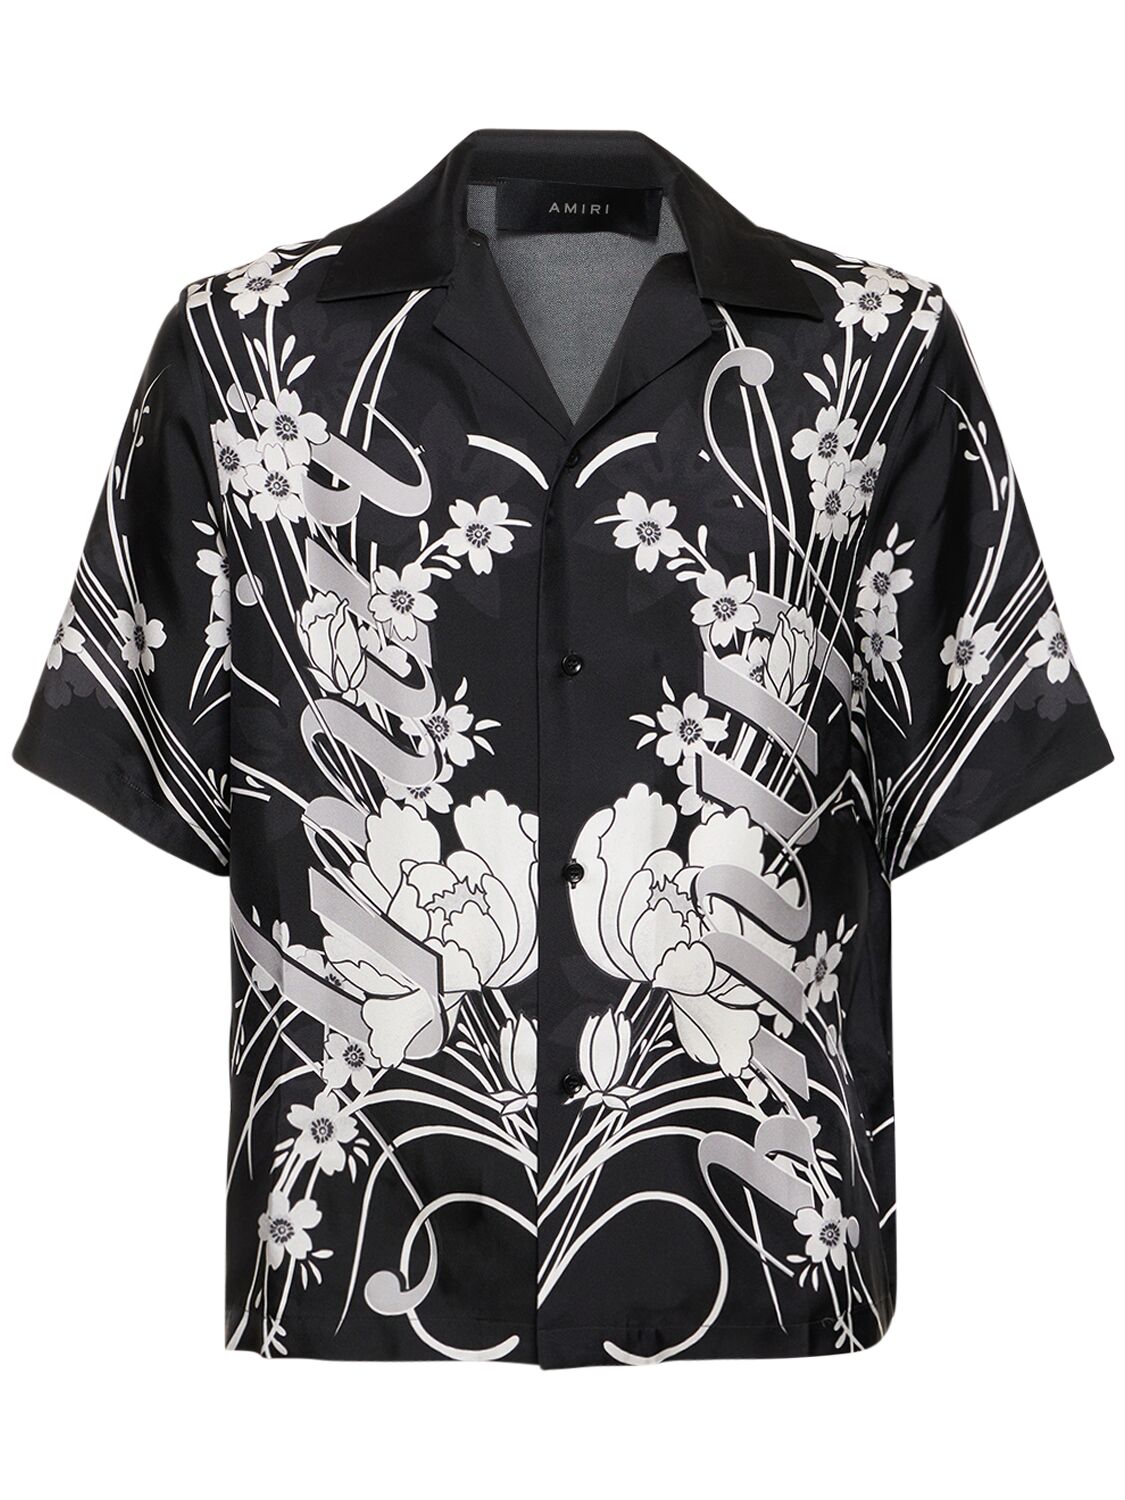 Amiri Floral Bowling Shirt – MEN > CLOTHING > SHIRTS